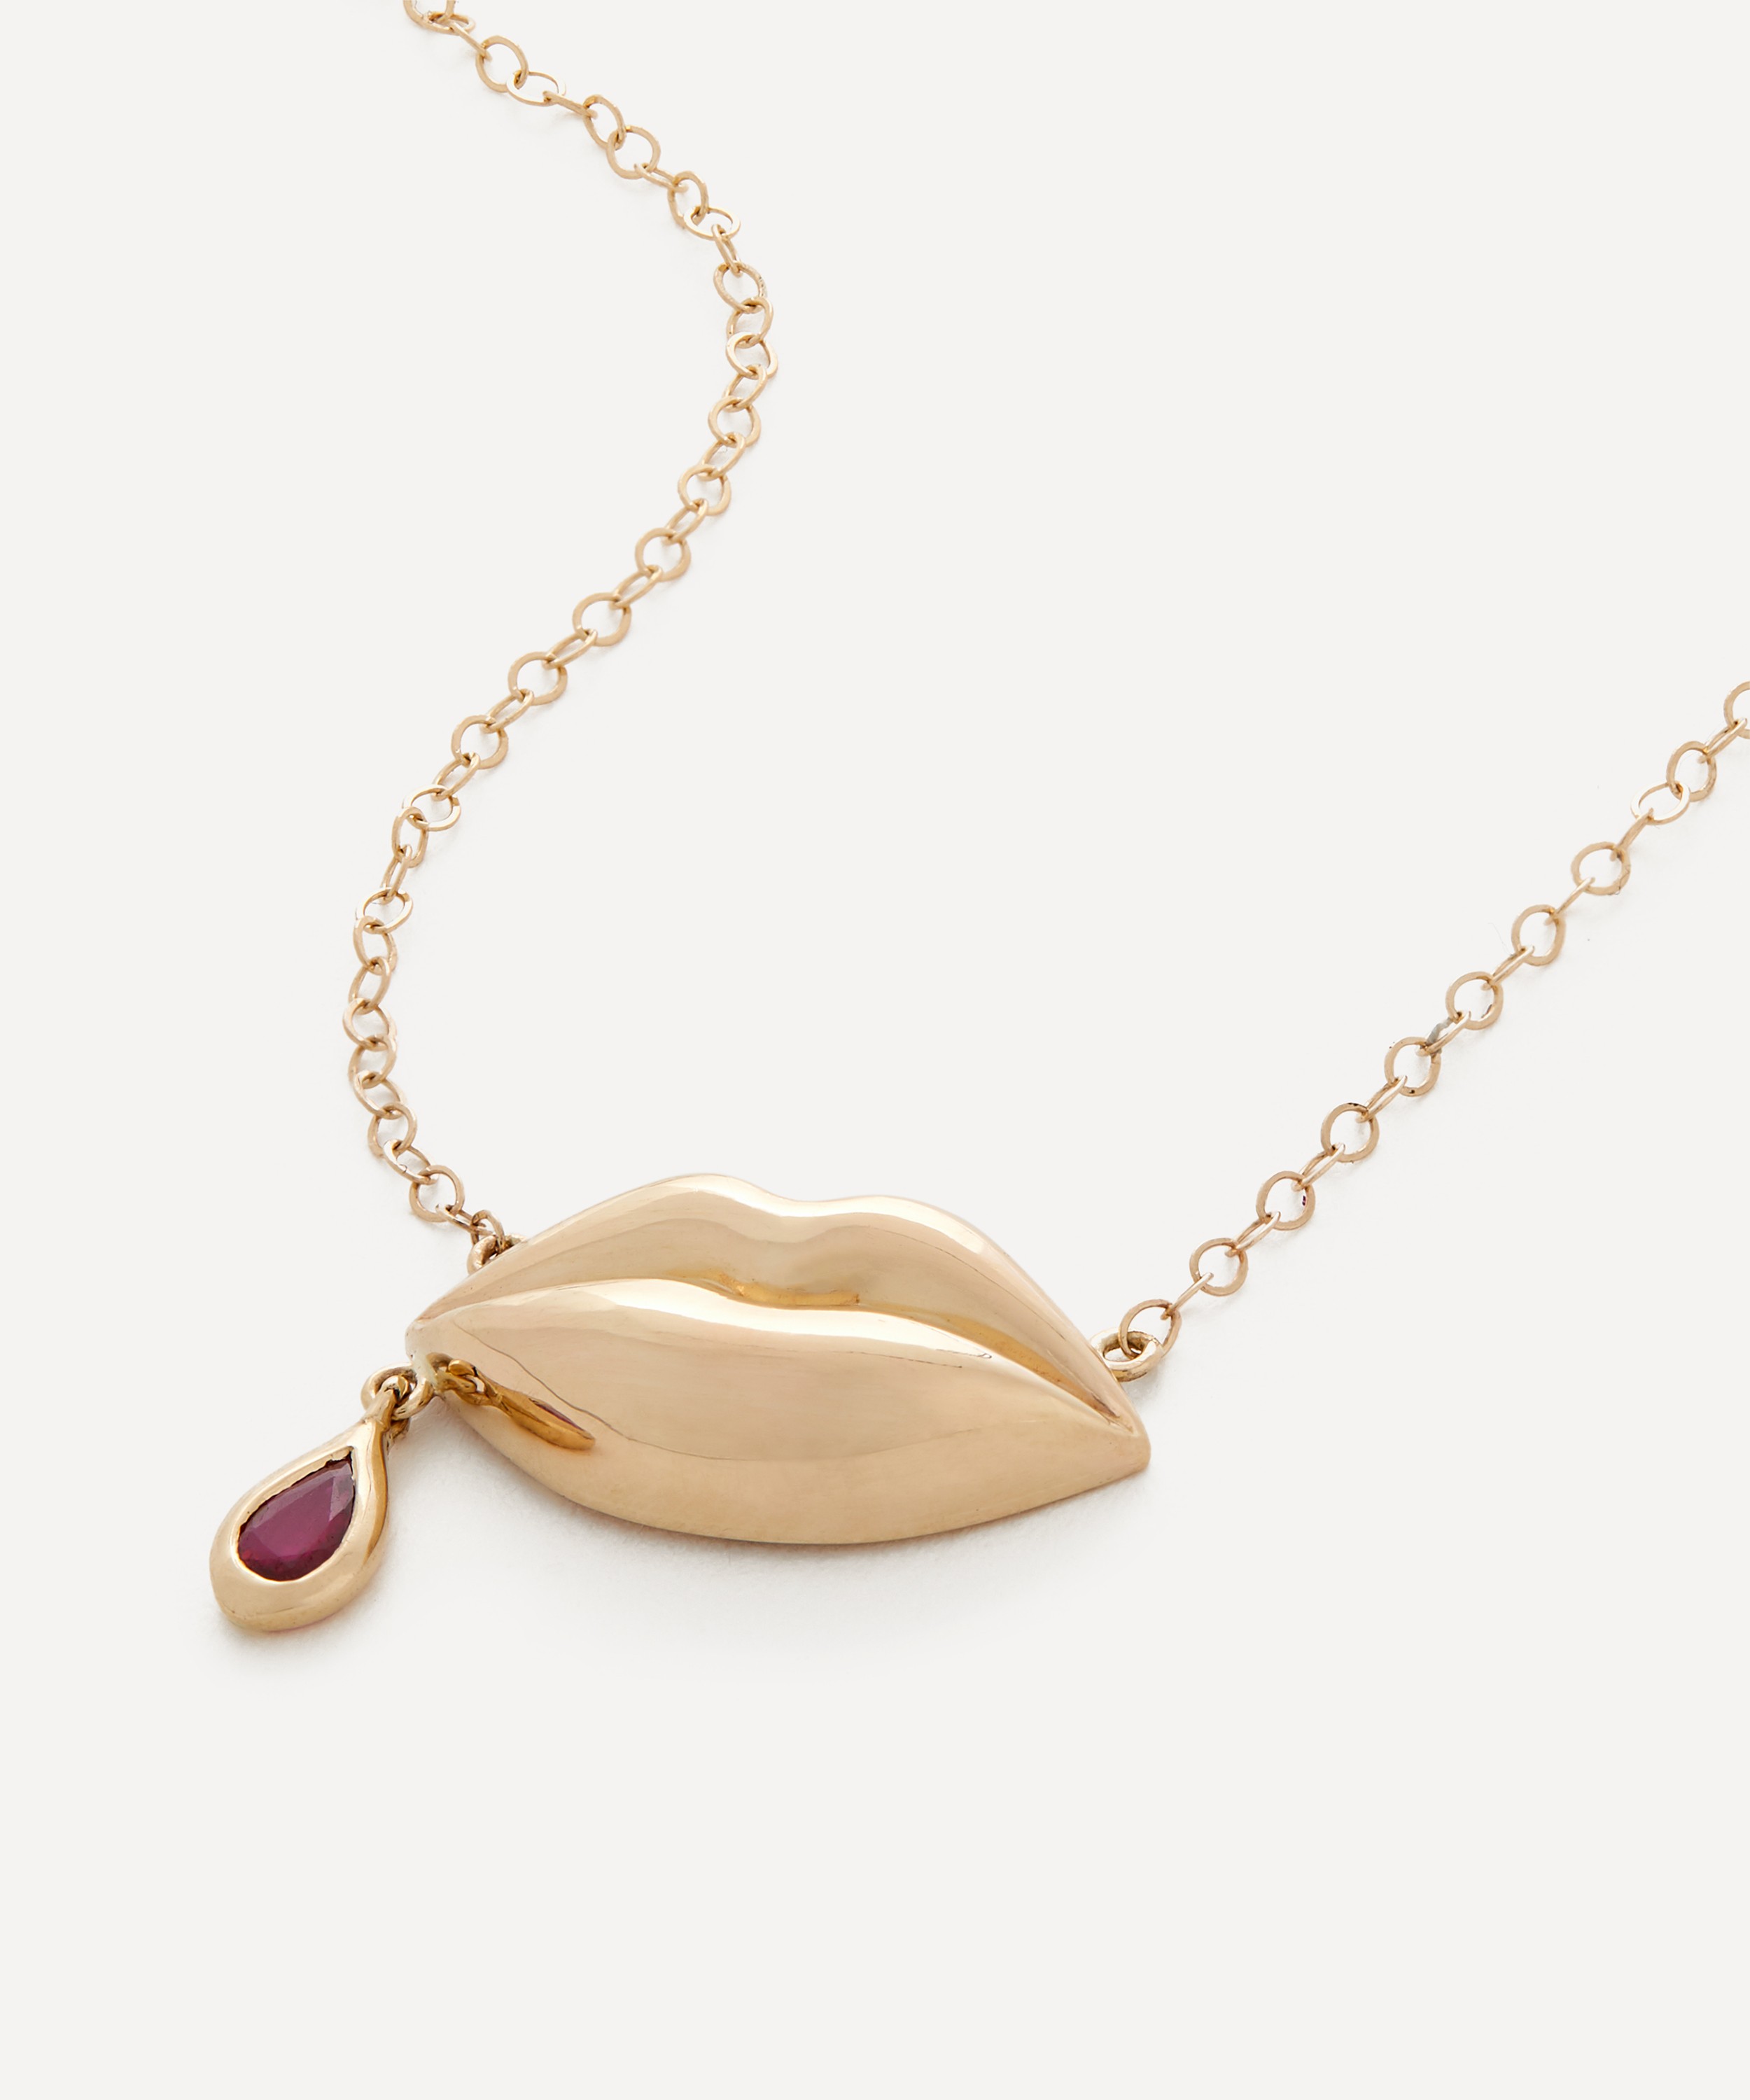 Rachel Quinn - 14ct Gold Last Kiss Pendant Necklace